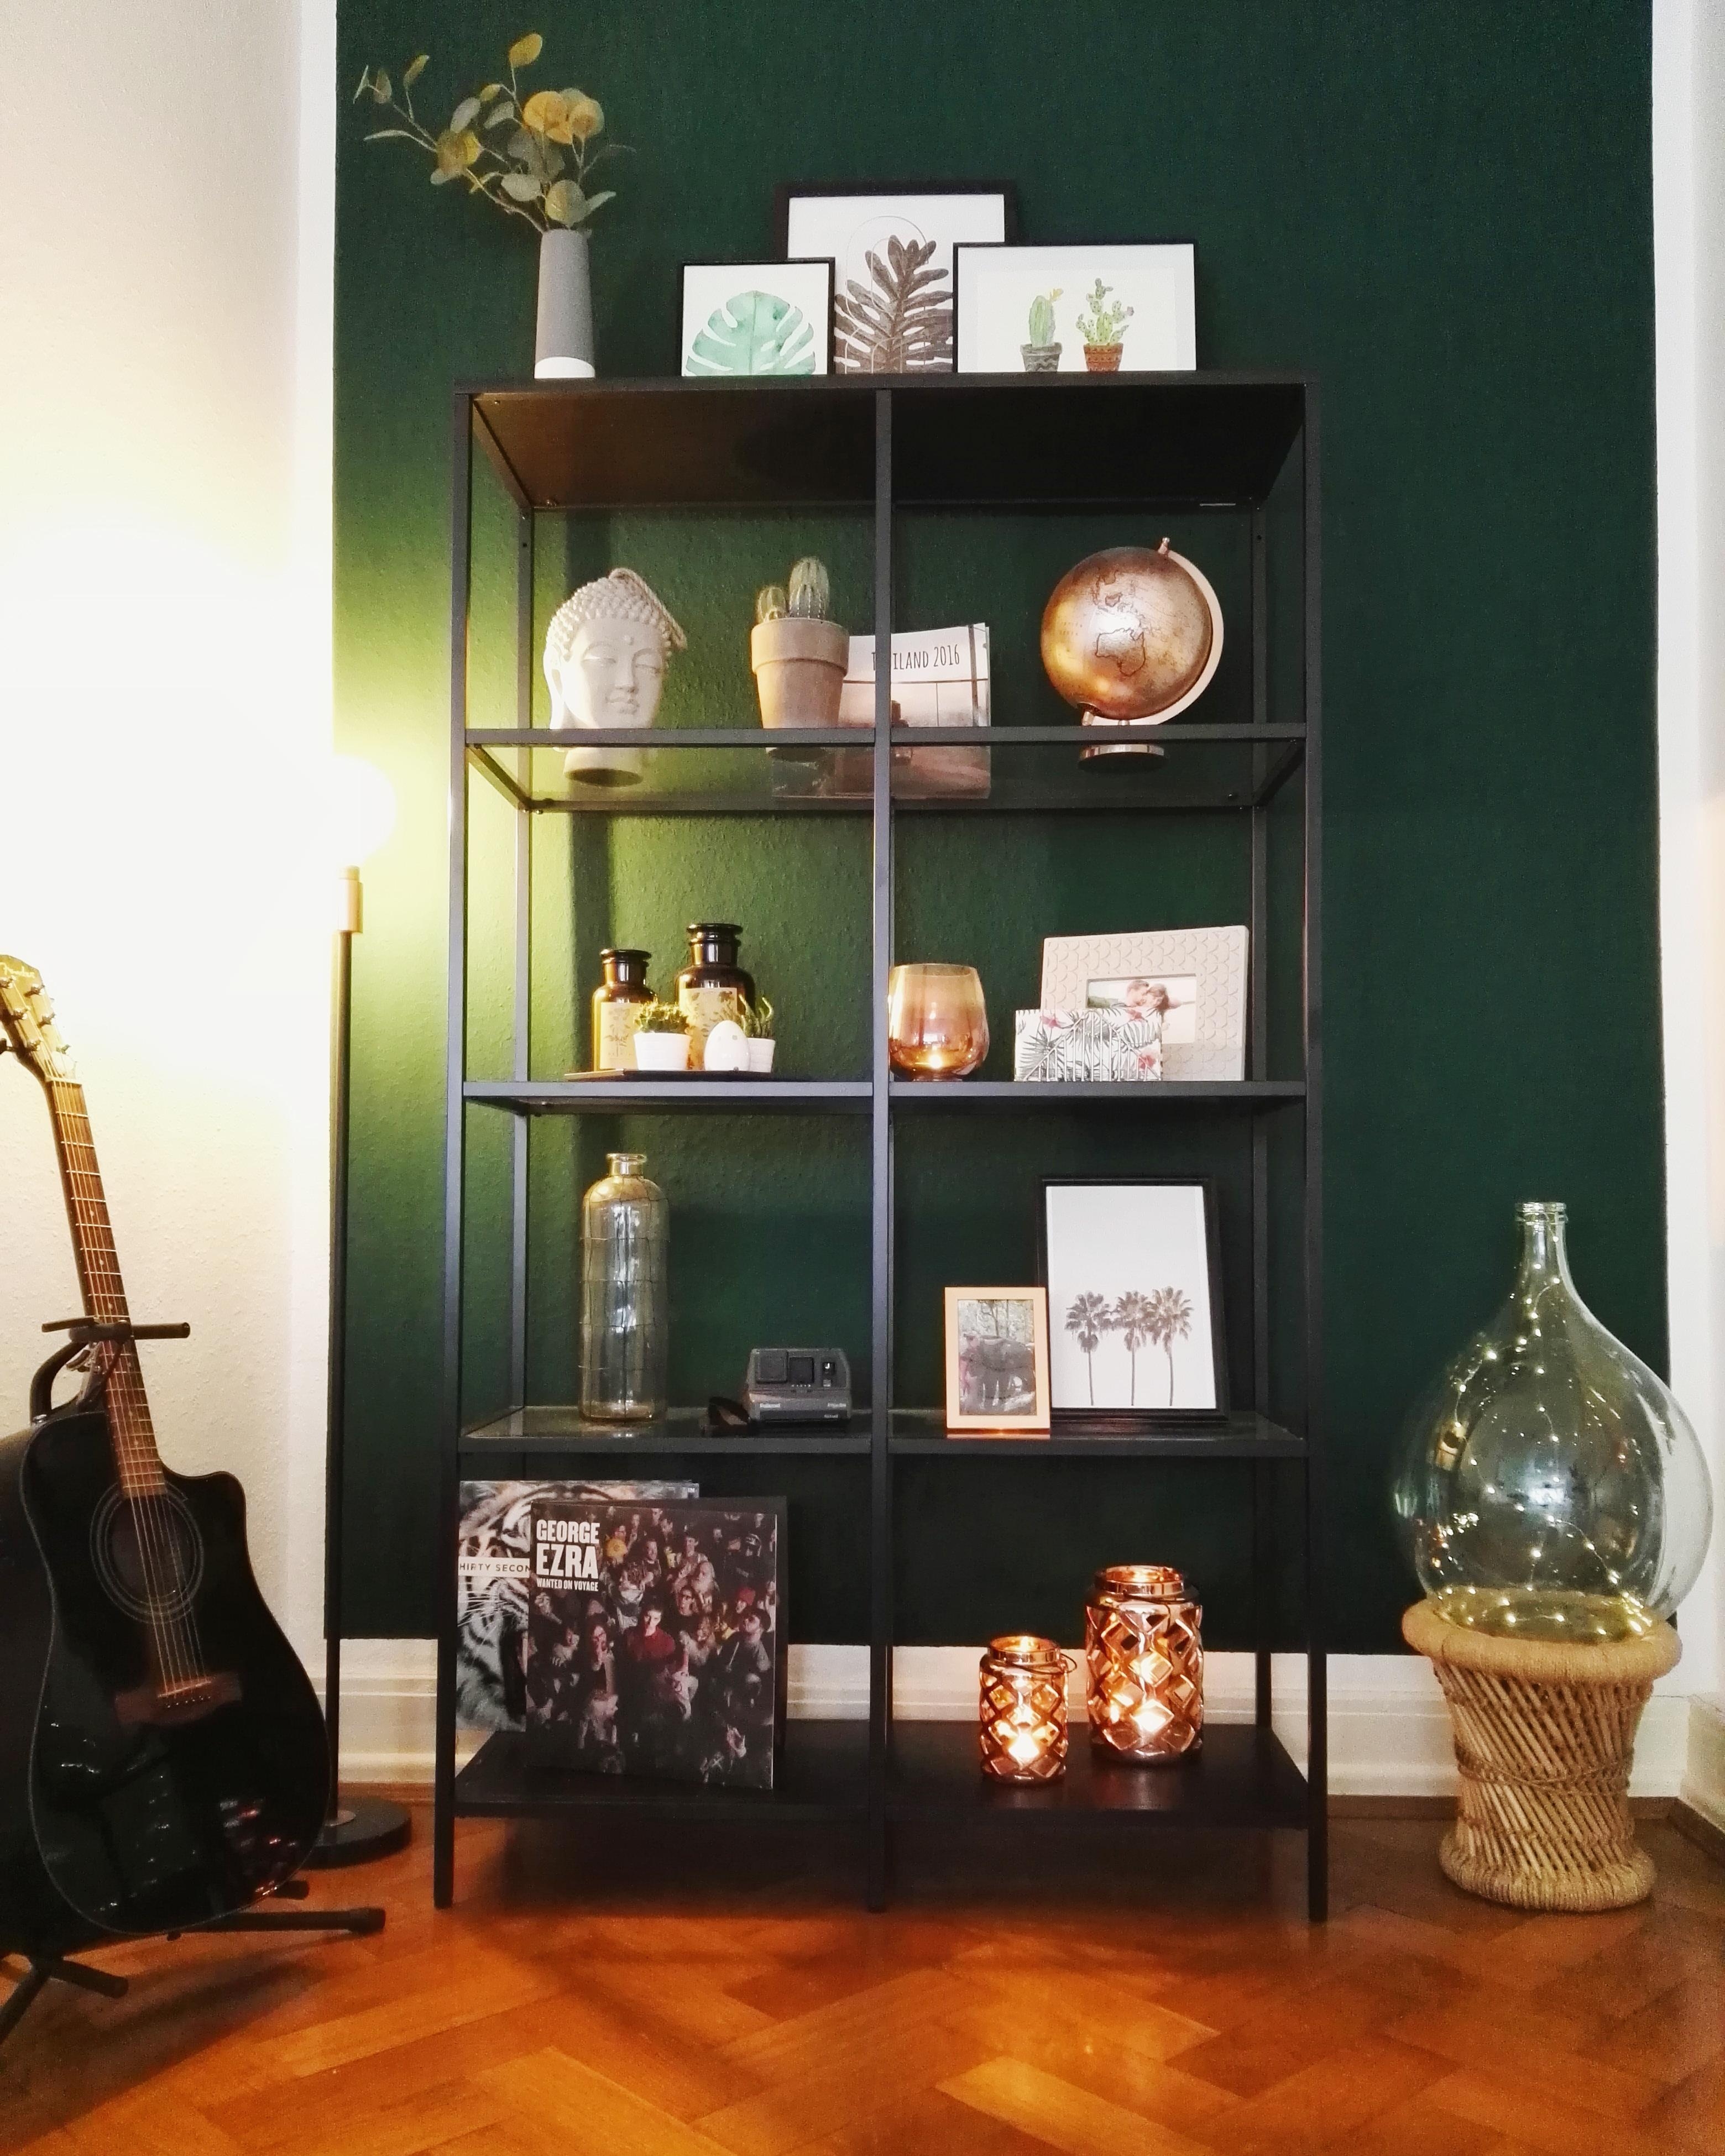 Ab jetzt ist das Wohnzimmer noch grüner #greenwall #shelf #interior #livingroom 